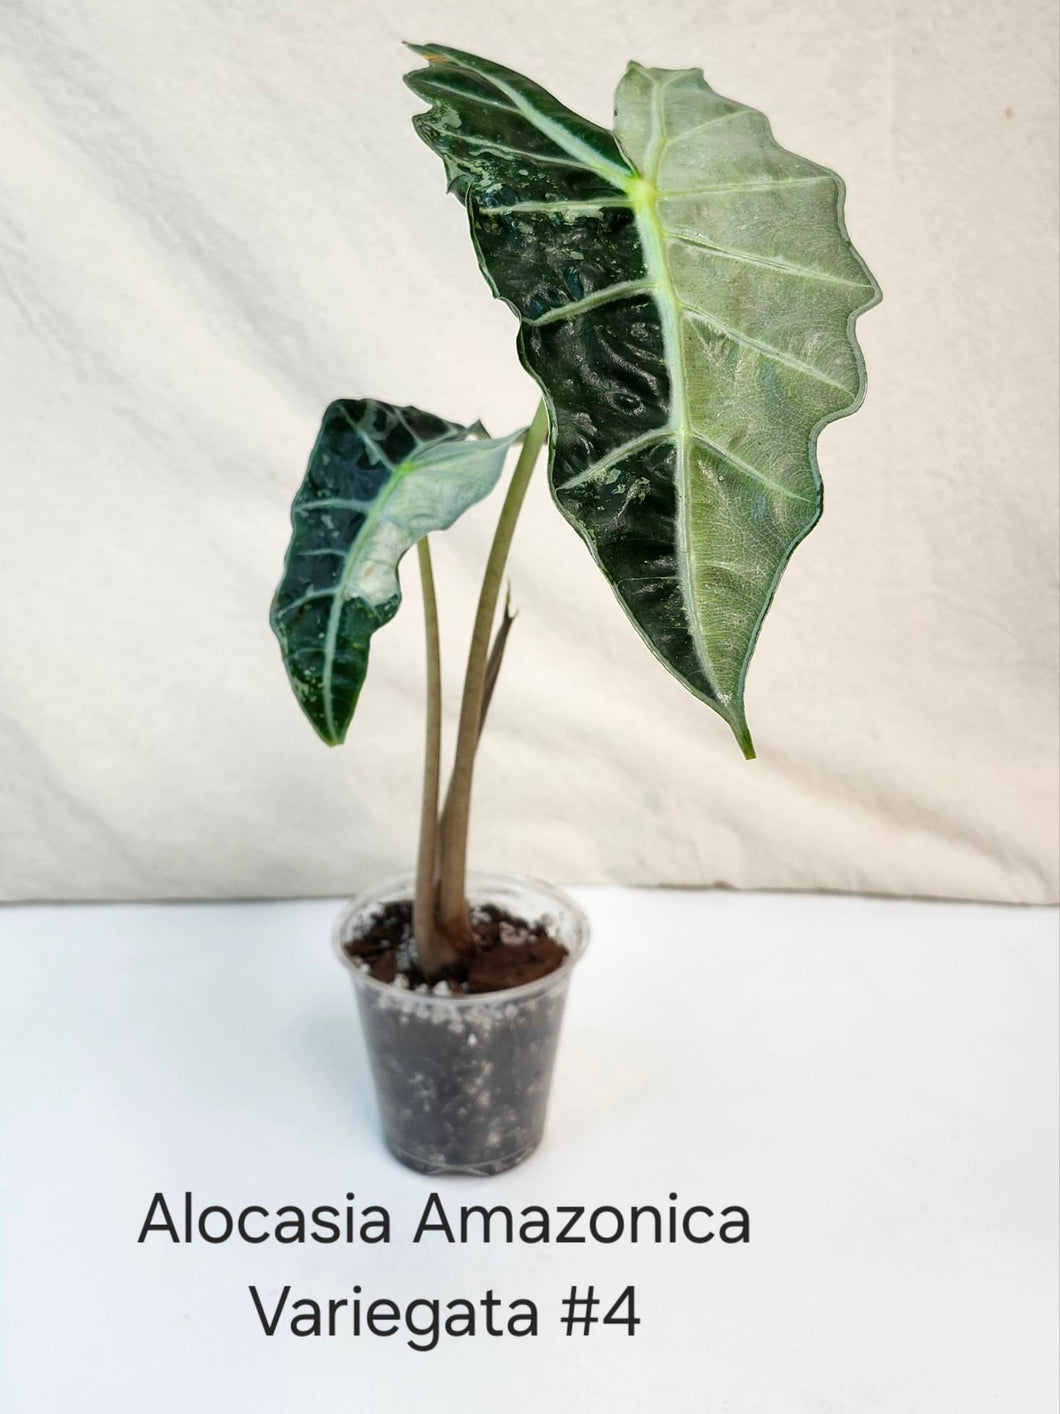 Alocasia Amazonica variegata #4